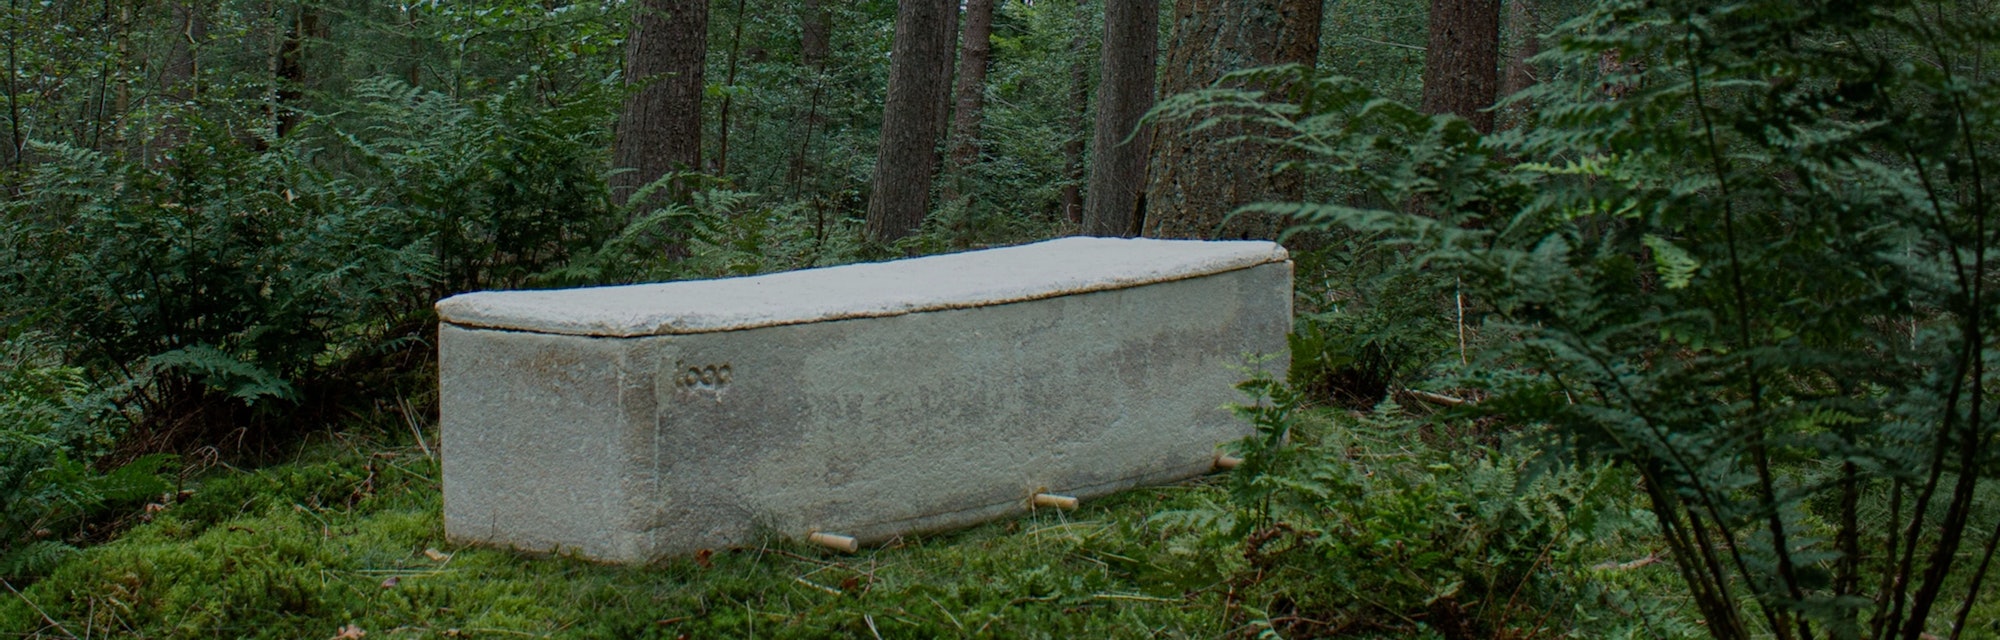 Loop coffin in woods